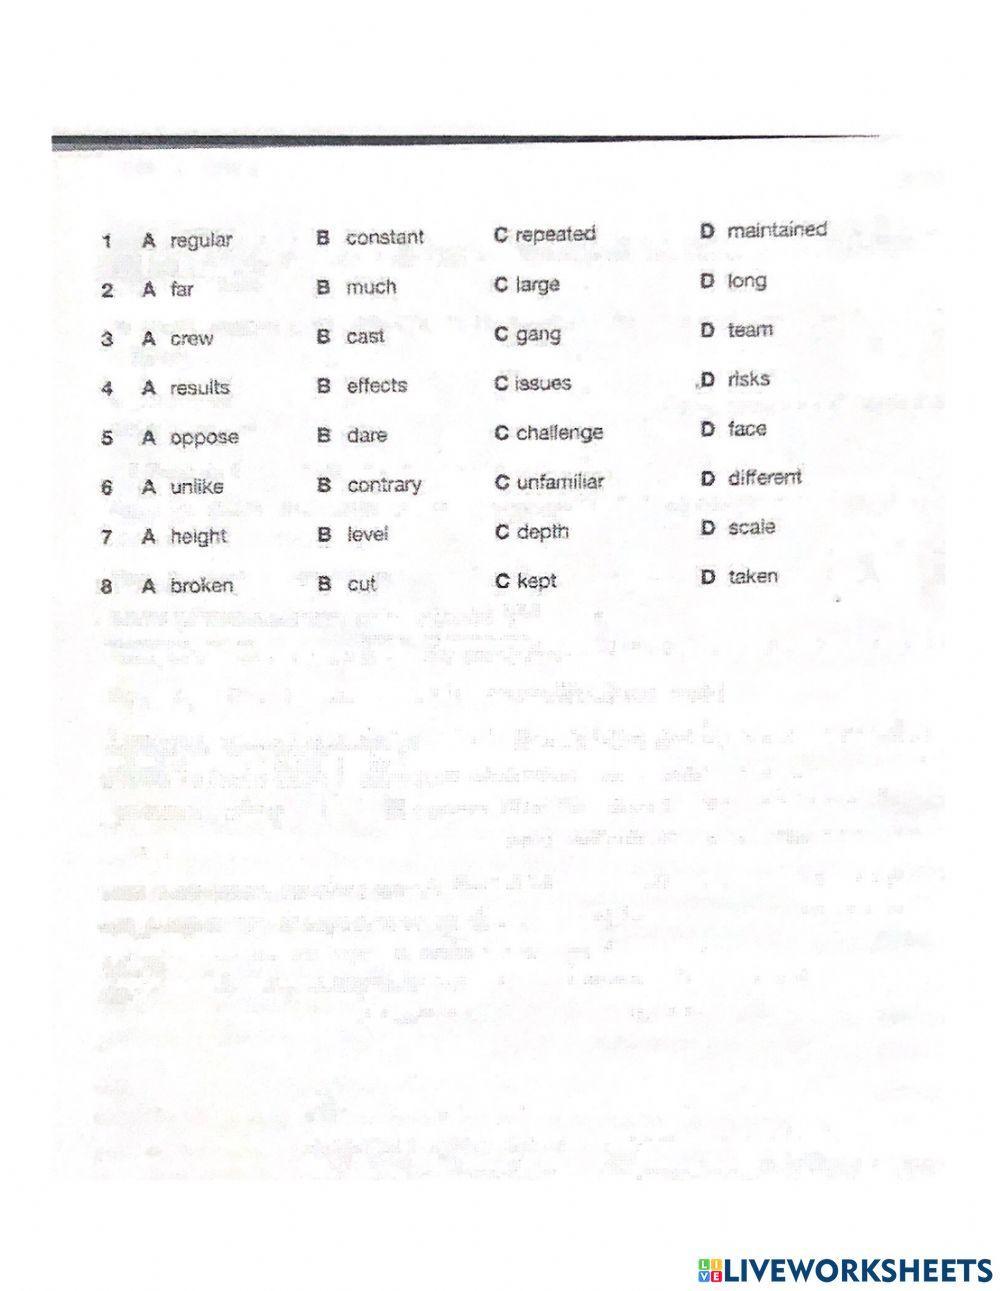 Test 5 page 102 part 1 thru 4